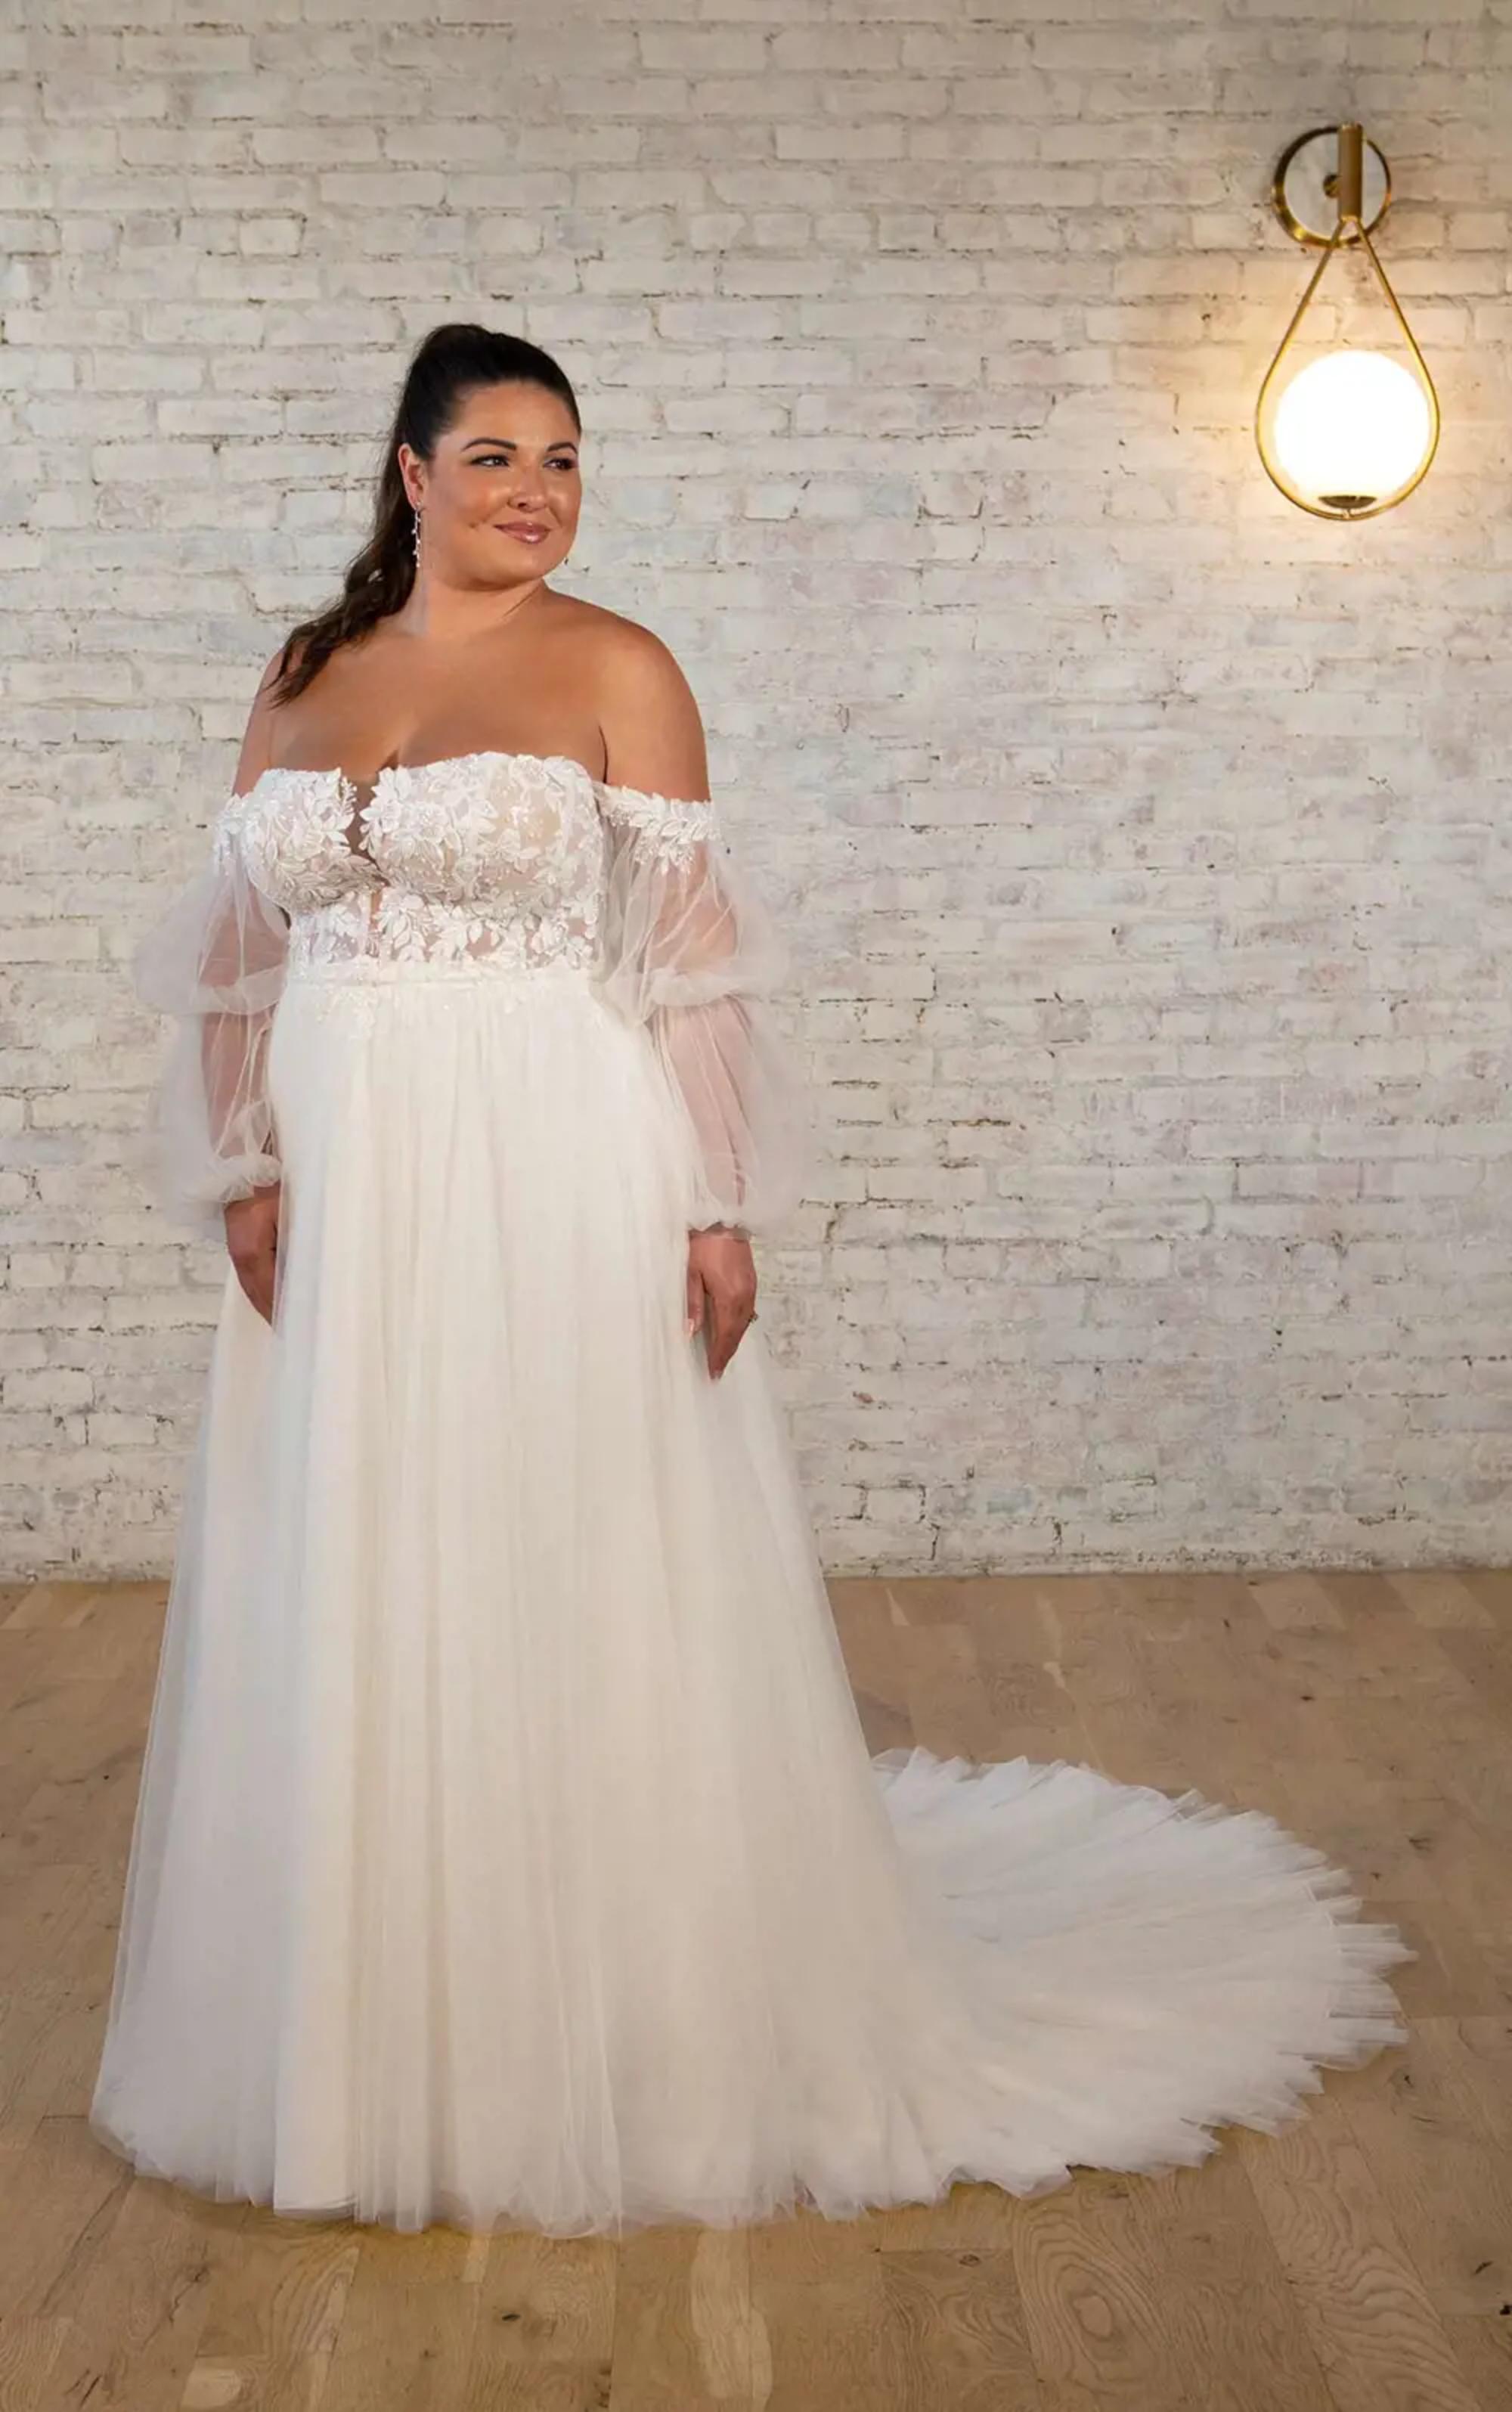 Plus Size Bride Stuns in Fall Boho California Wedding - The Pretty Pear  Bride - Plus Size Bridal Magazine